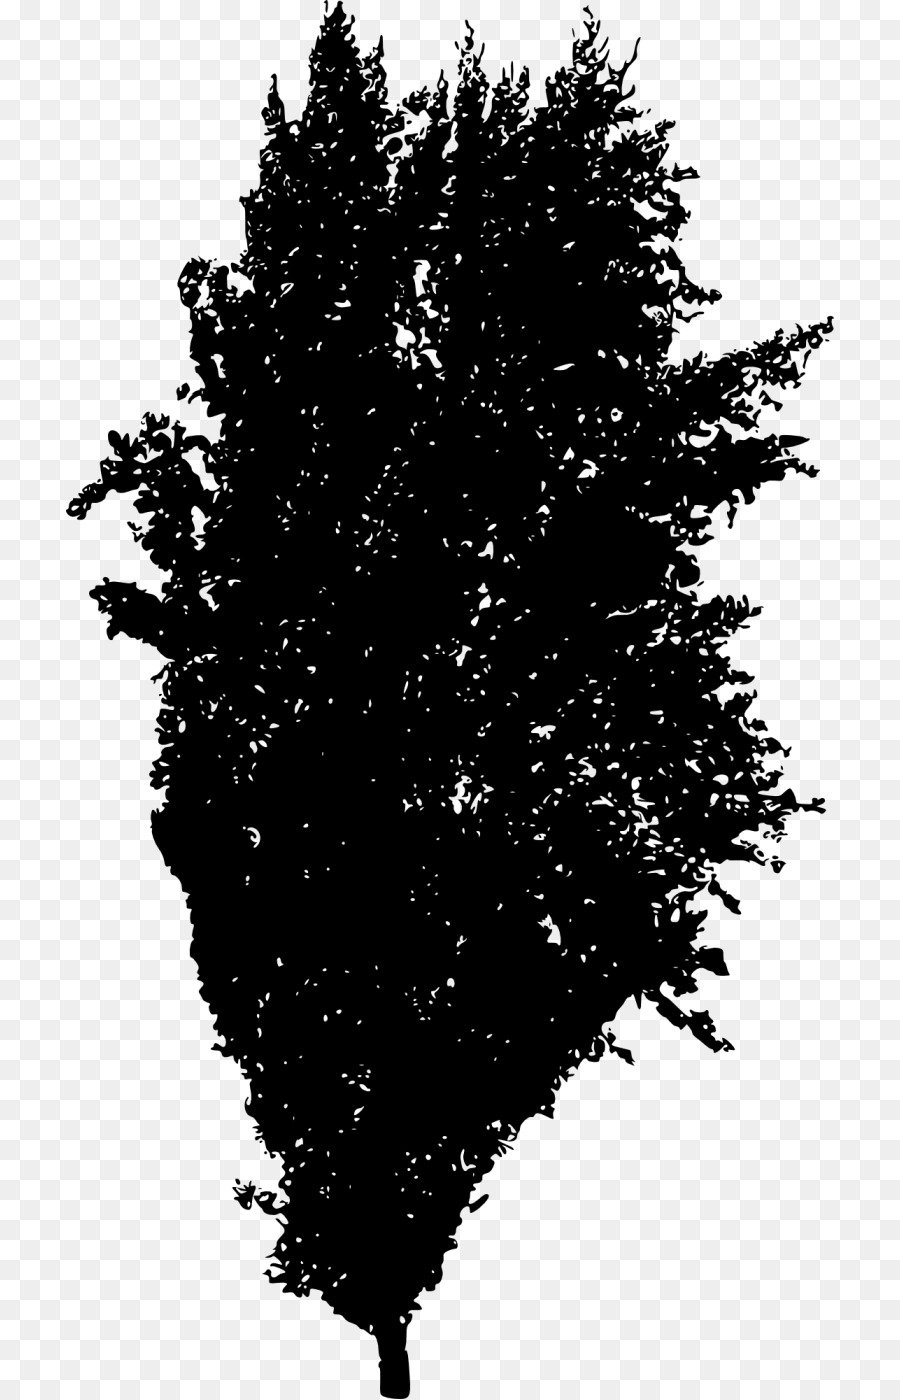 Baum-Silhouette-Fichten-Gehölz-Tanne - Baum silhouette